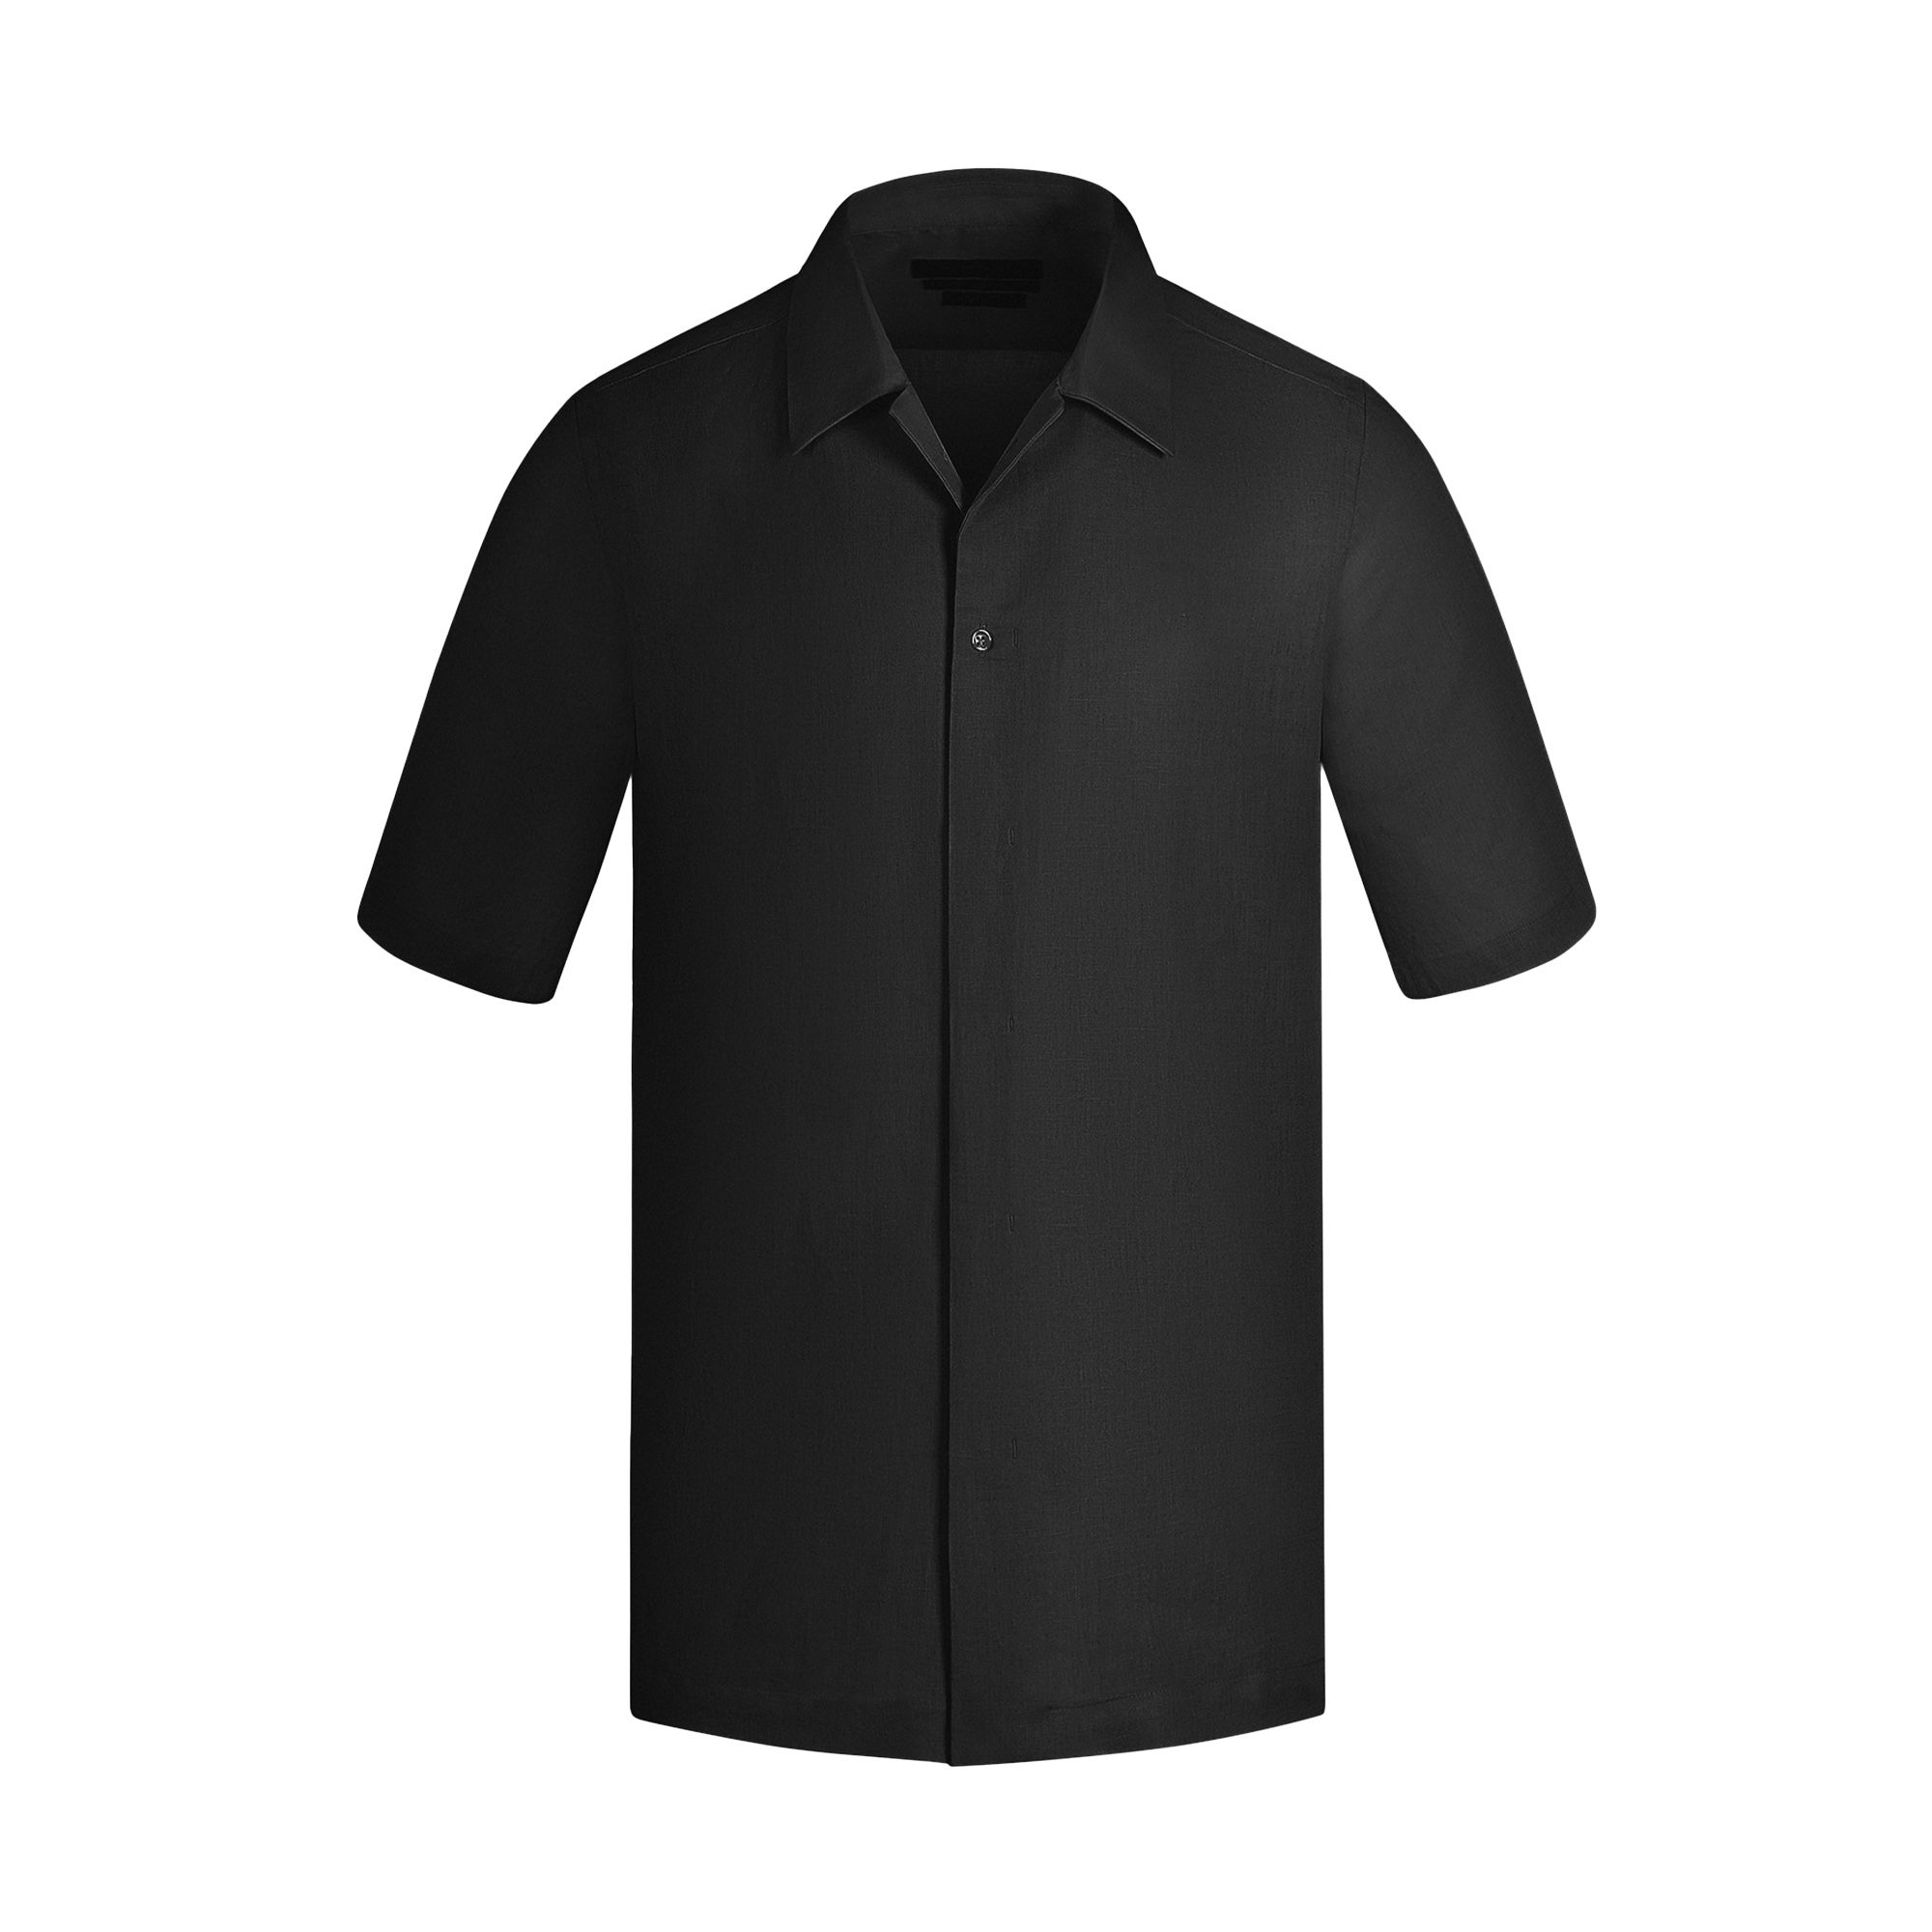 نکته خرید - قیمت روز پیراهن آستین کوتاه مردانه کروم مدل 2410113 خرید